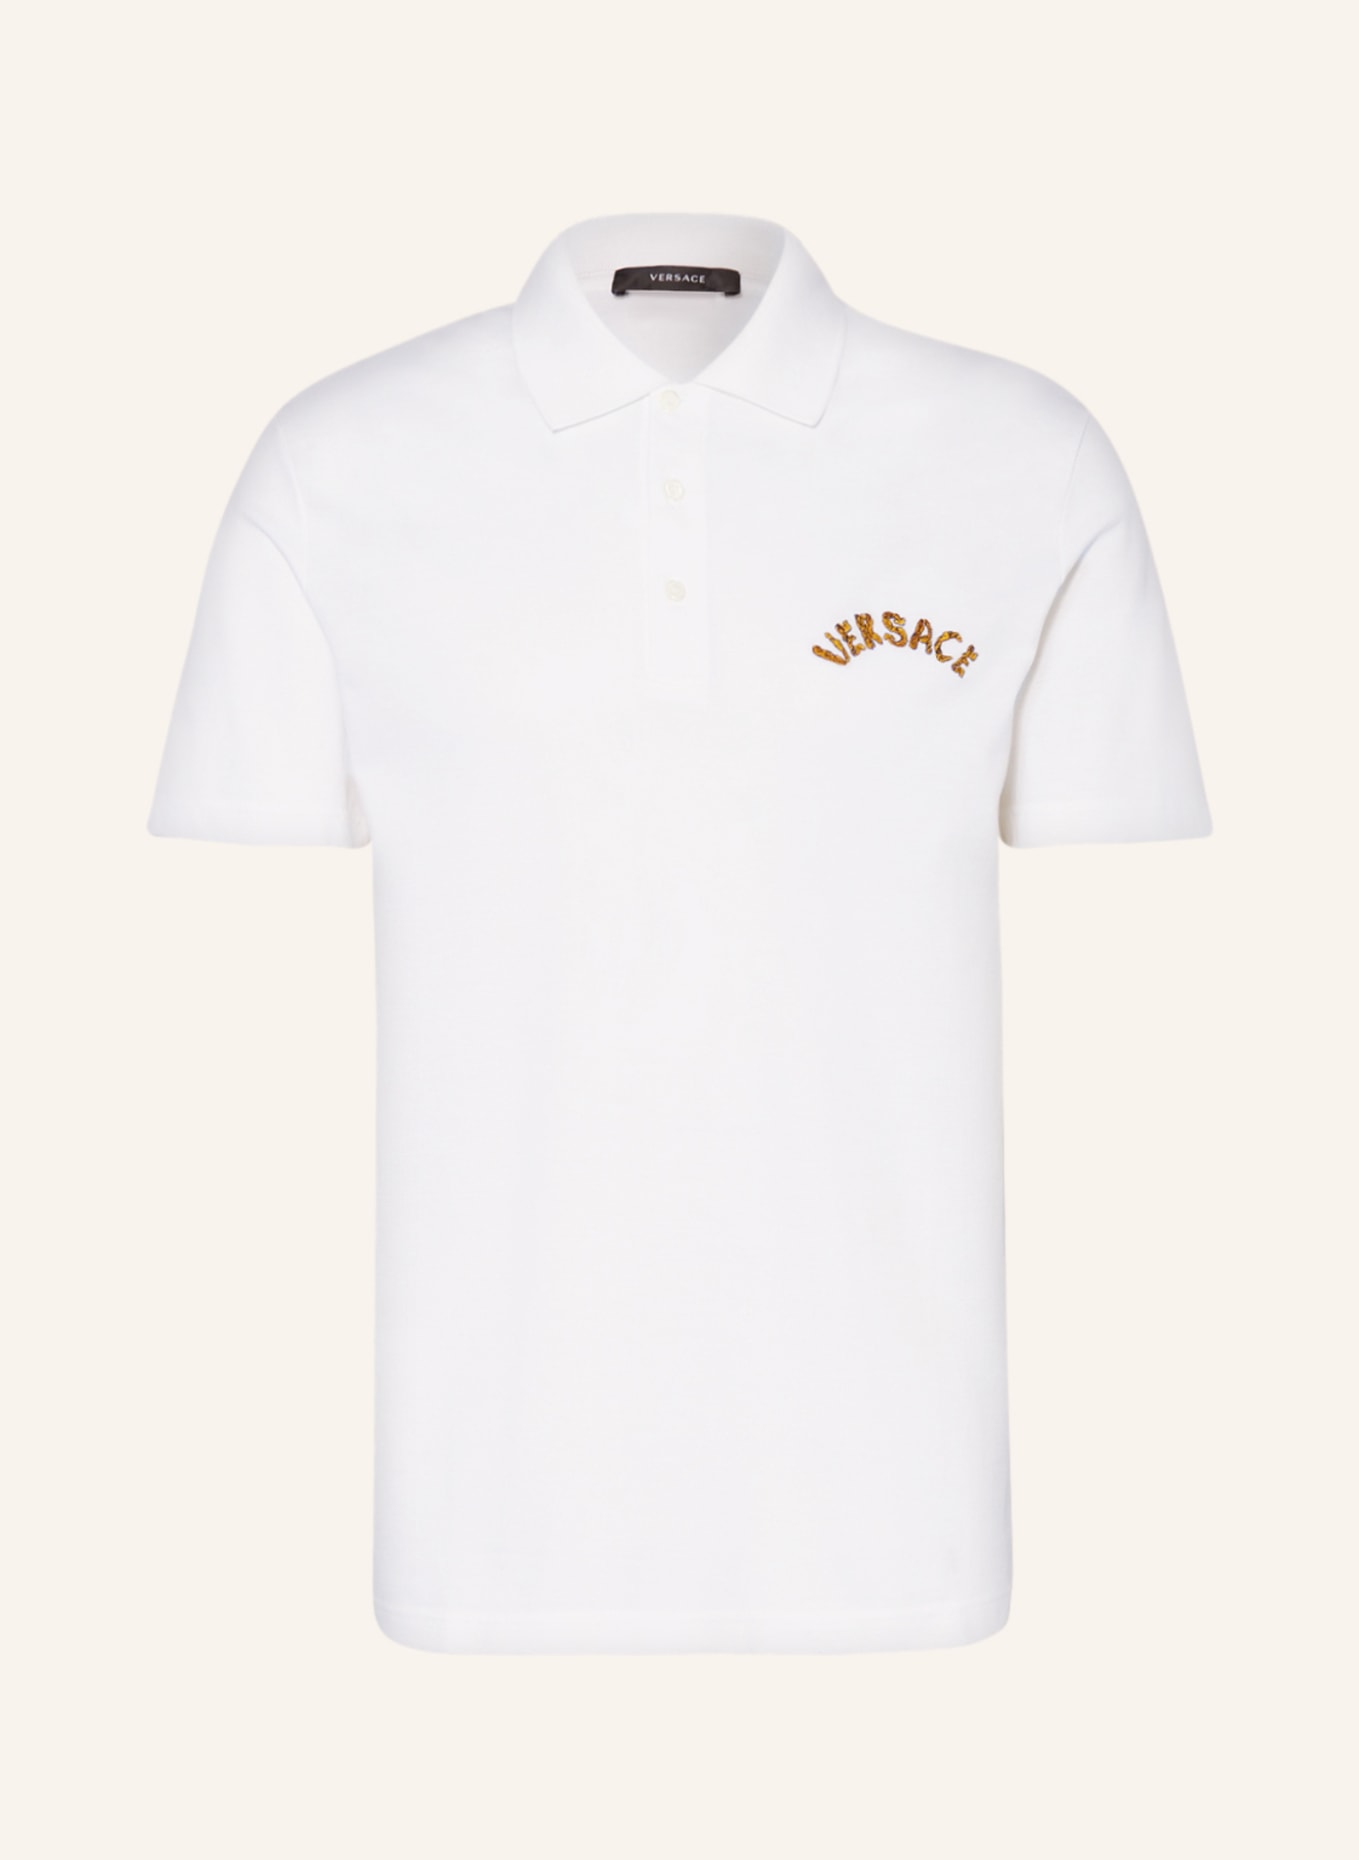 VERSACE Piqué polo shirt tailor fit, Color: WHITE (Image 1)